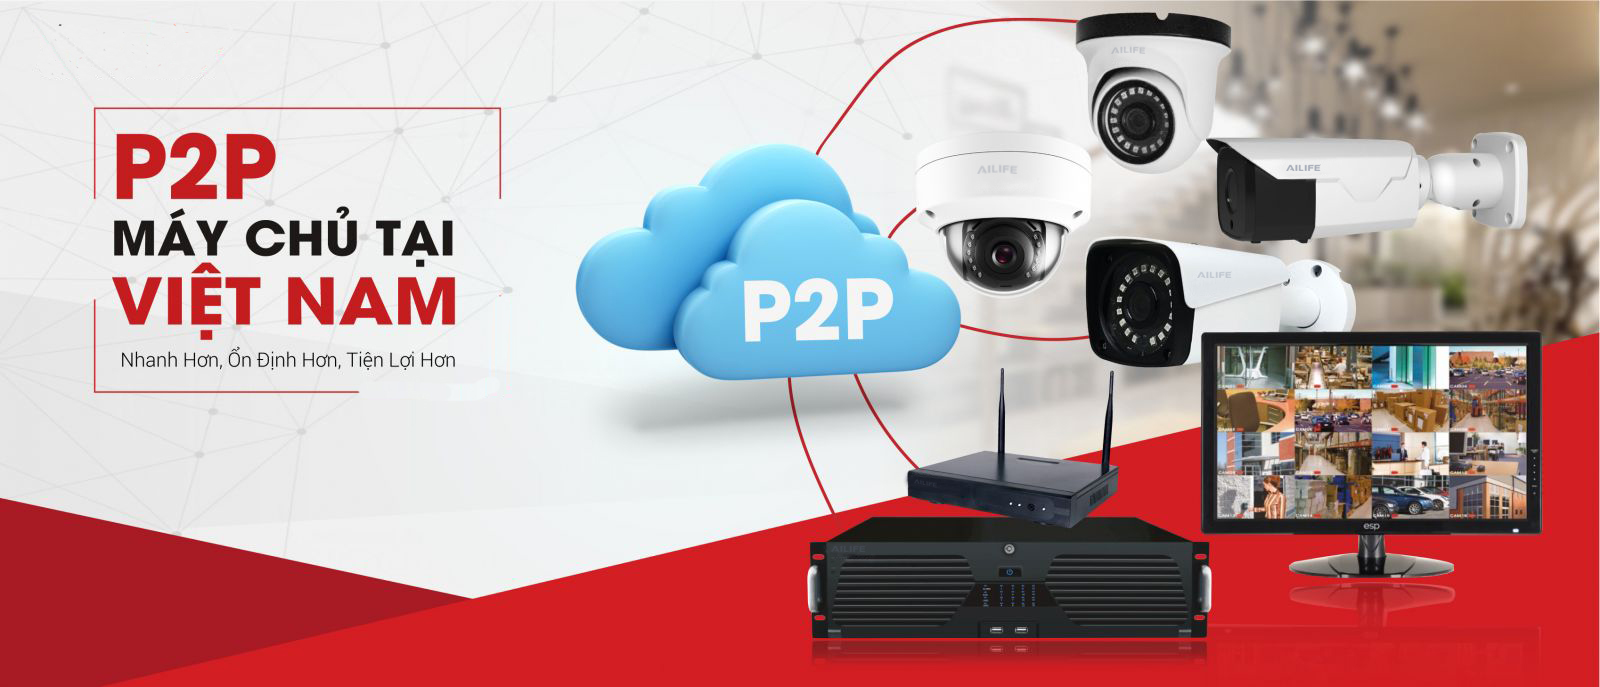 Tìm hiểu công nghệ P2P trong camera giám sát